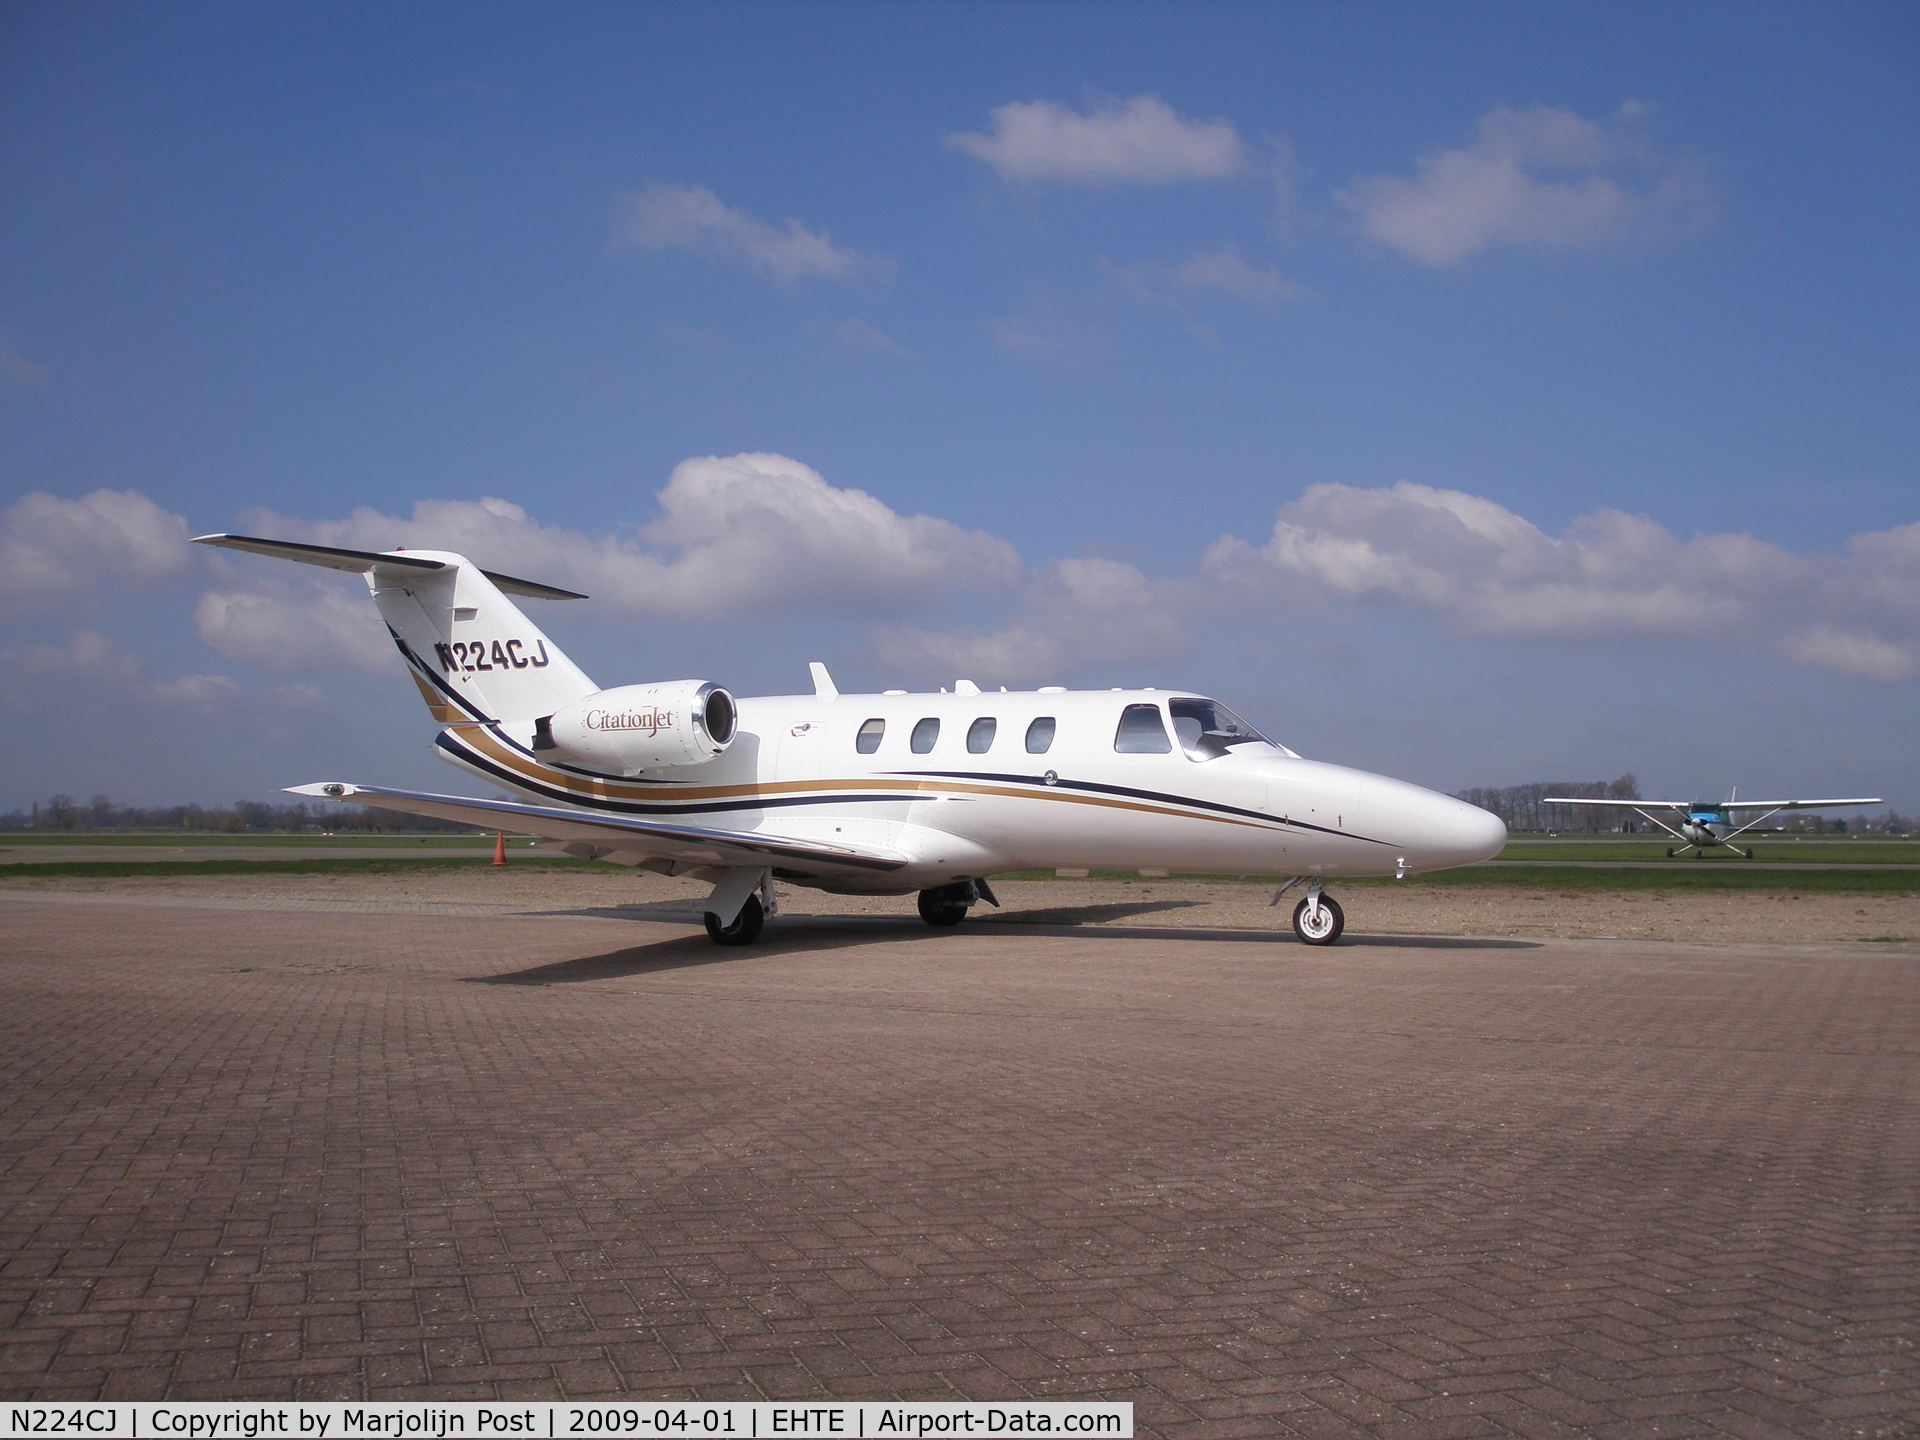 N224CJ, 1997 Cessna 525 CitationJet C/N 525-0224, Visit @ Teuge Airport The Netherlands